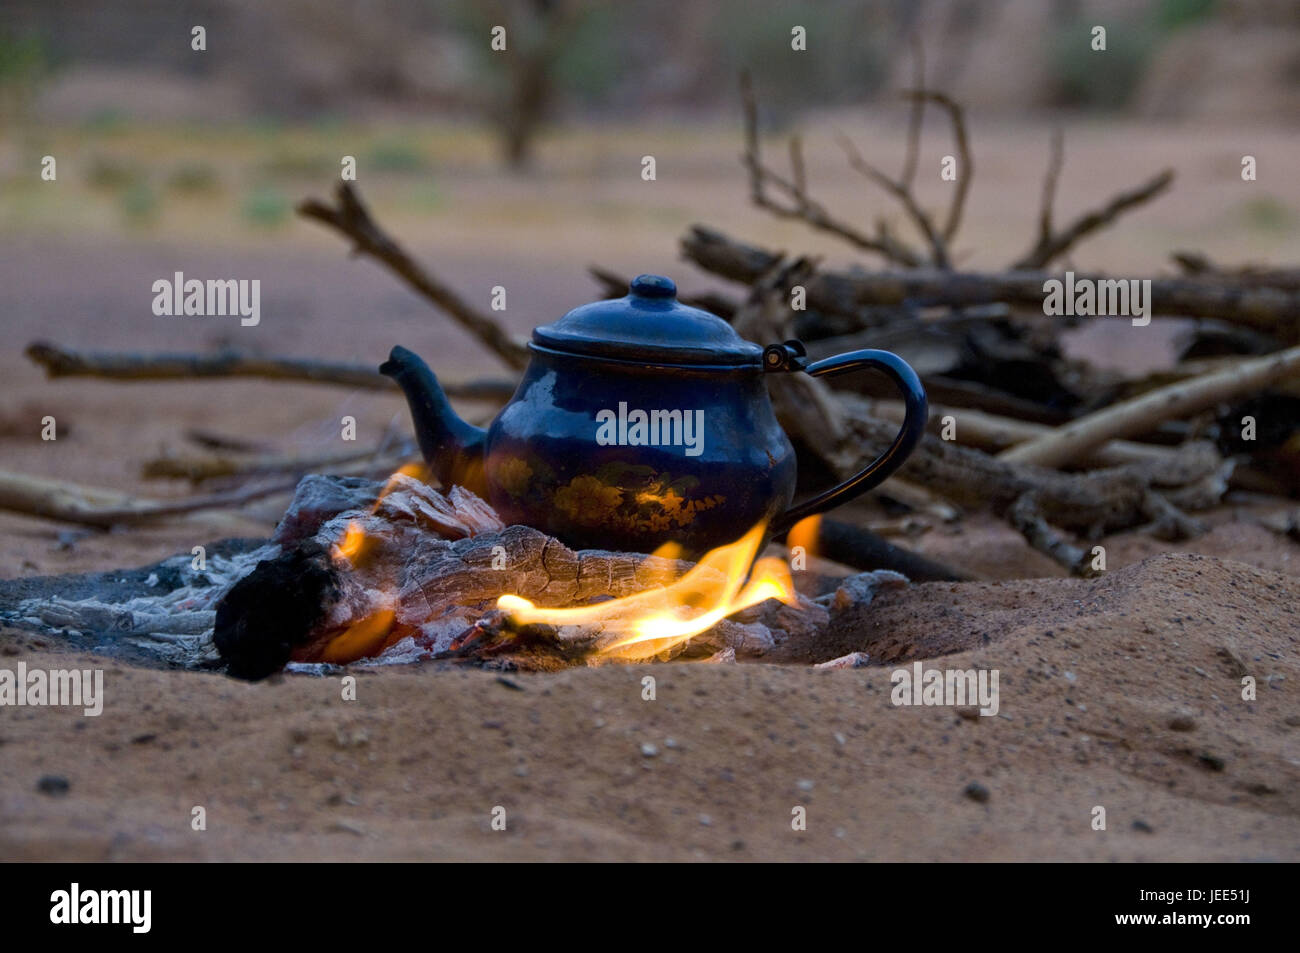 https://c8.alamy.com/comp/JEE51J/pot-of-tea-on-a-fireplace-tadrat-algeria-africa-JEE51J.jpg